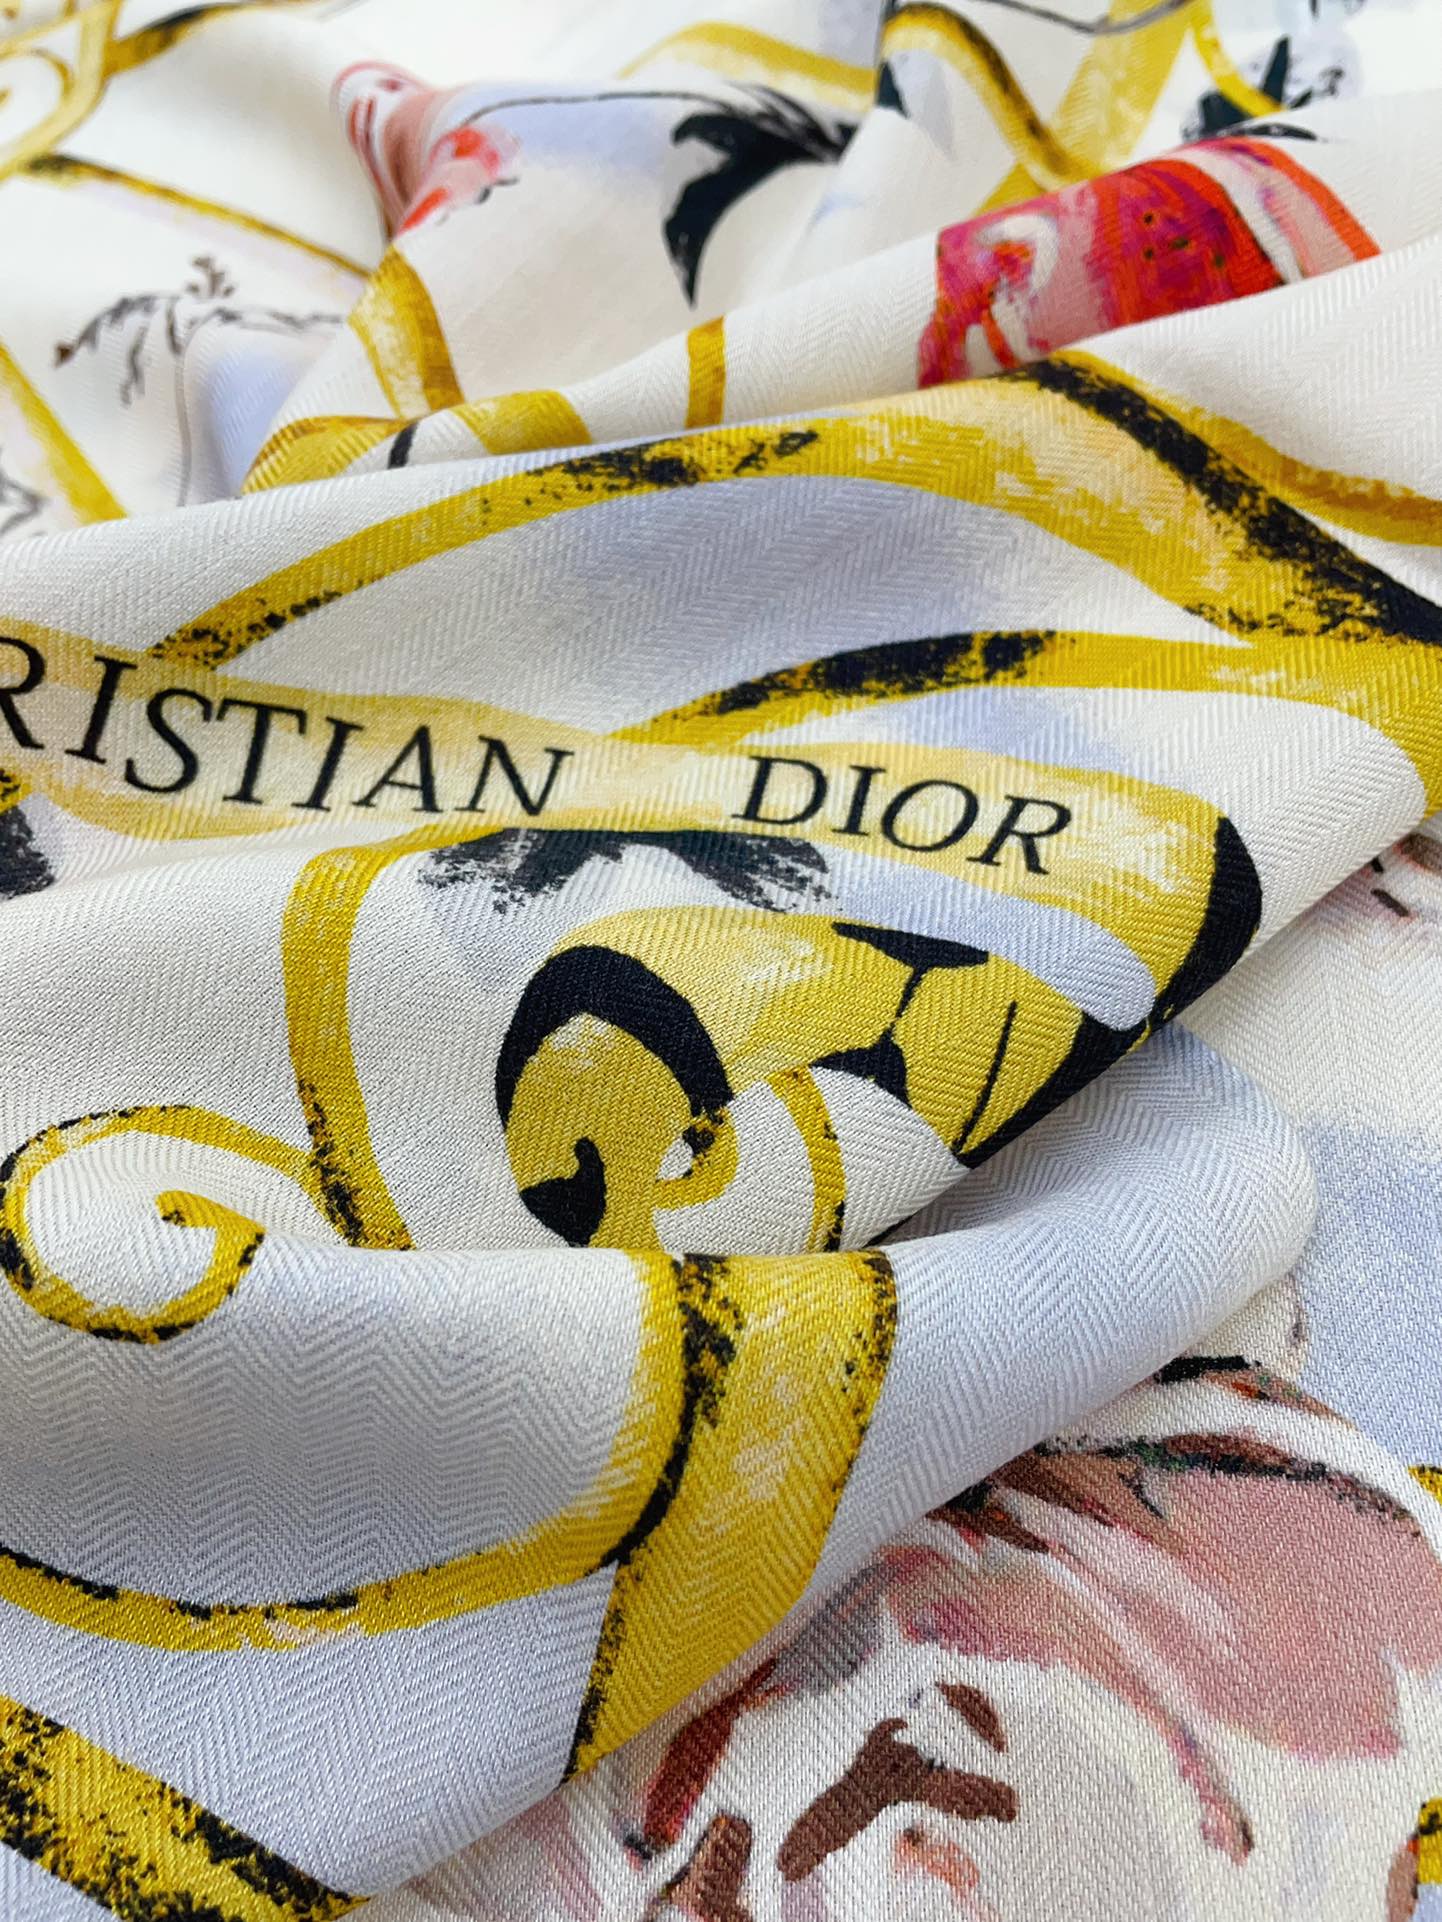 双面同色上新DiorJardinBotanique披肩它以浪漫的花卉图案为特色让人想起Dior先生钟爱的